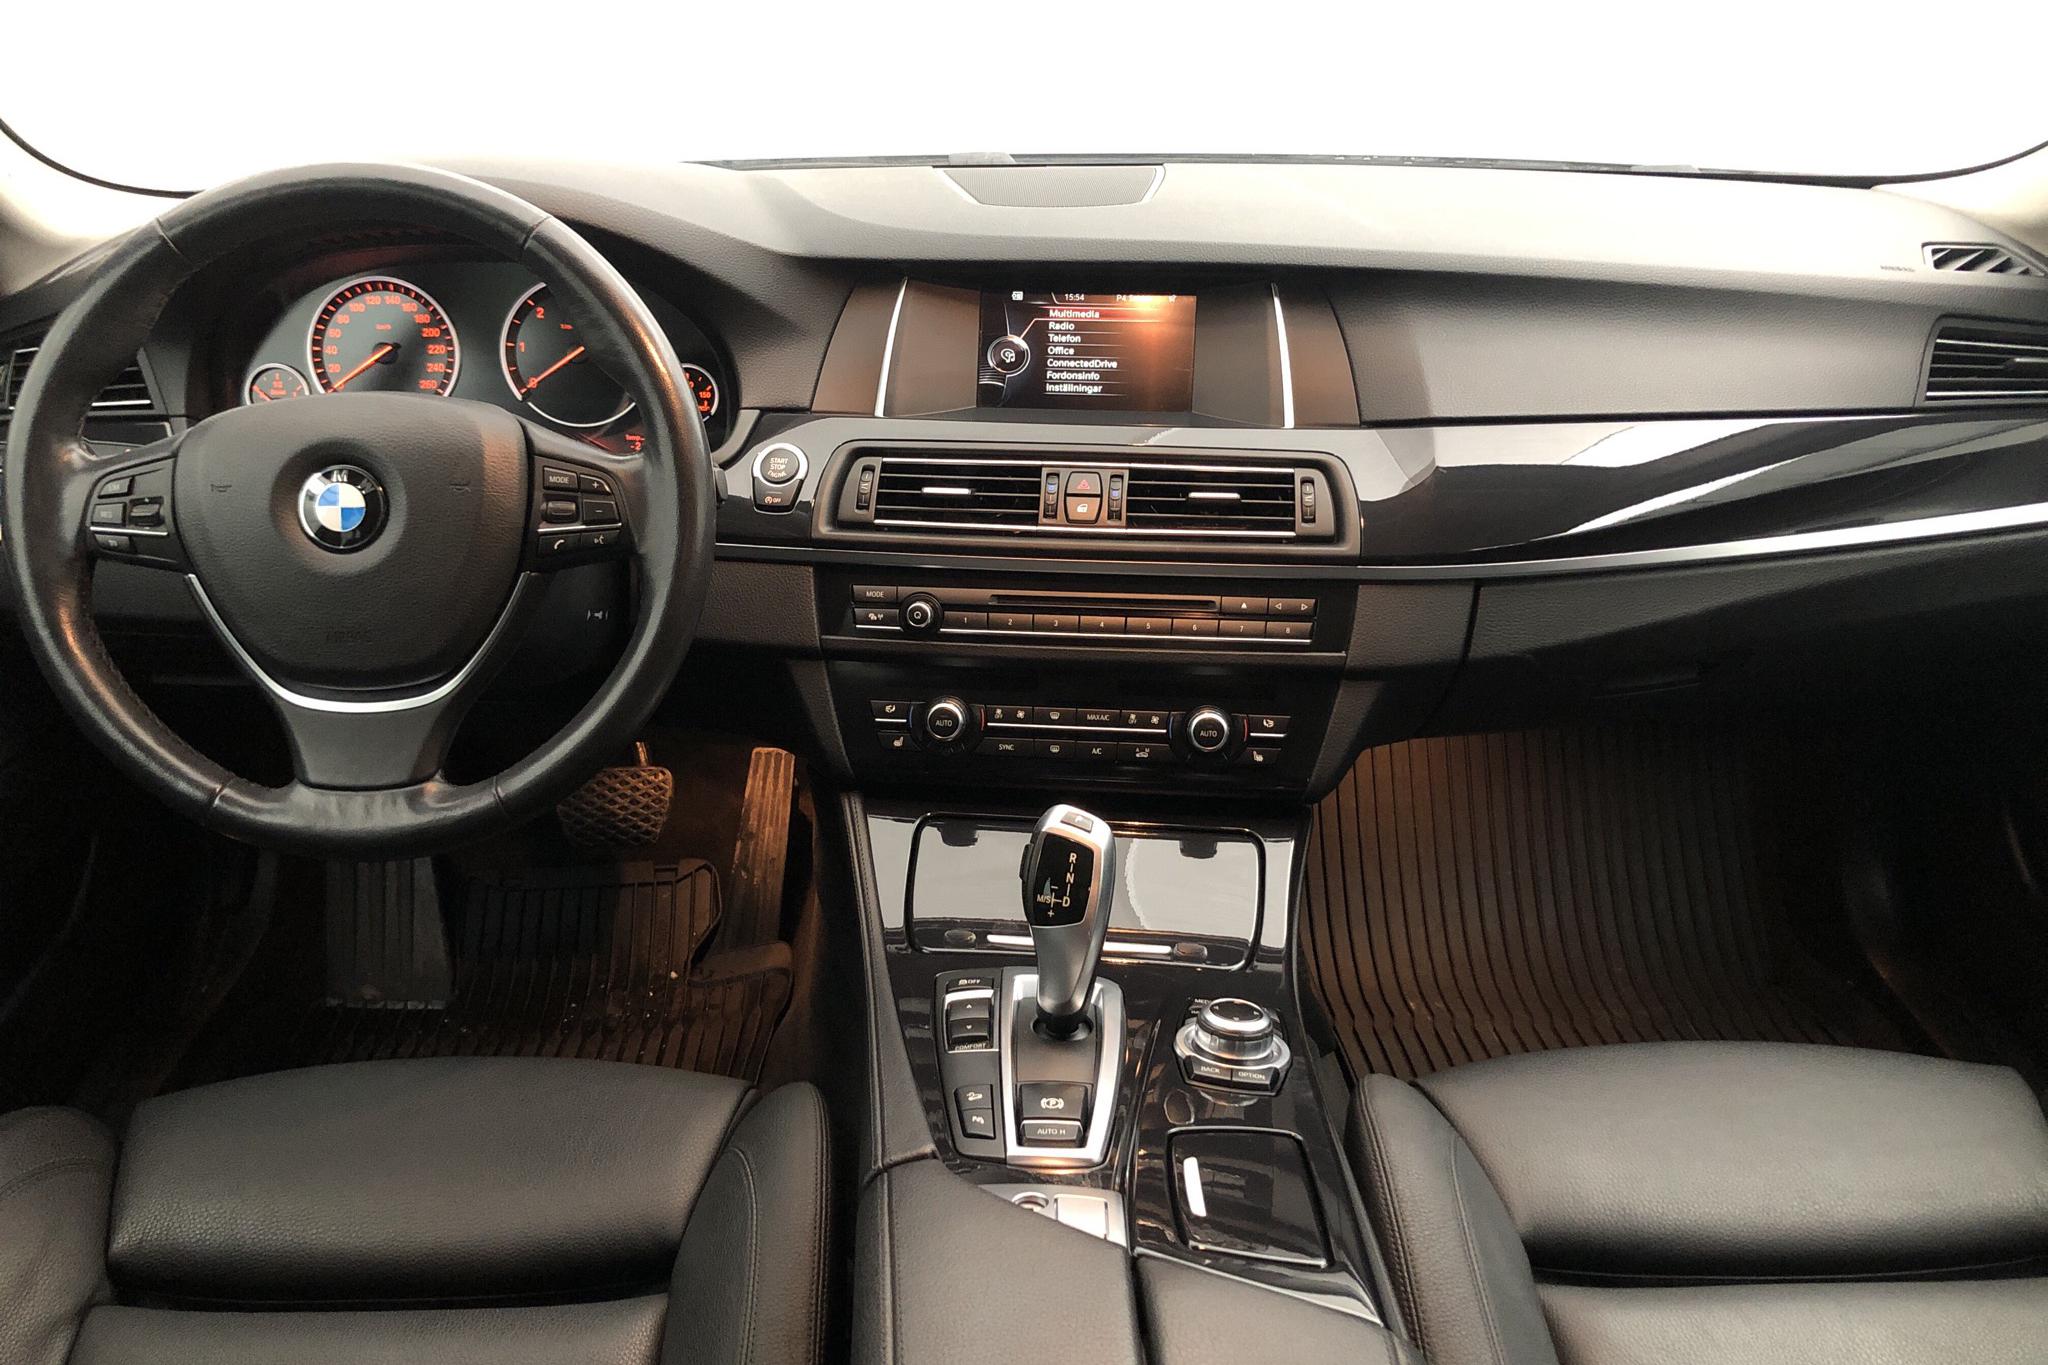 BMW 520d xDrive Touring, F11 (190hk) - 8 447 mil - Automat - silver - 2016